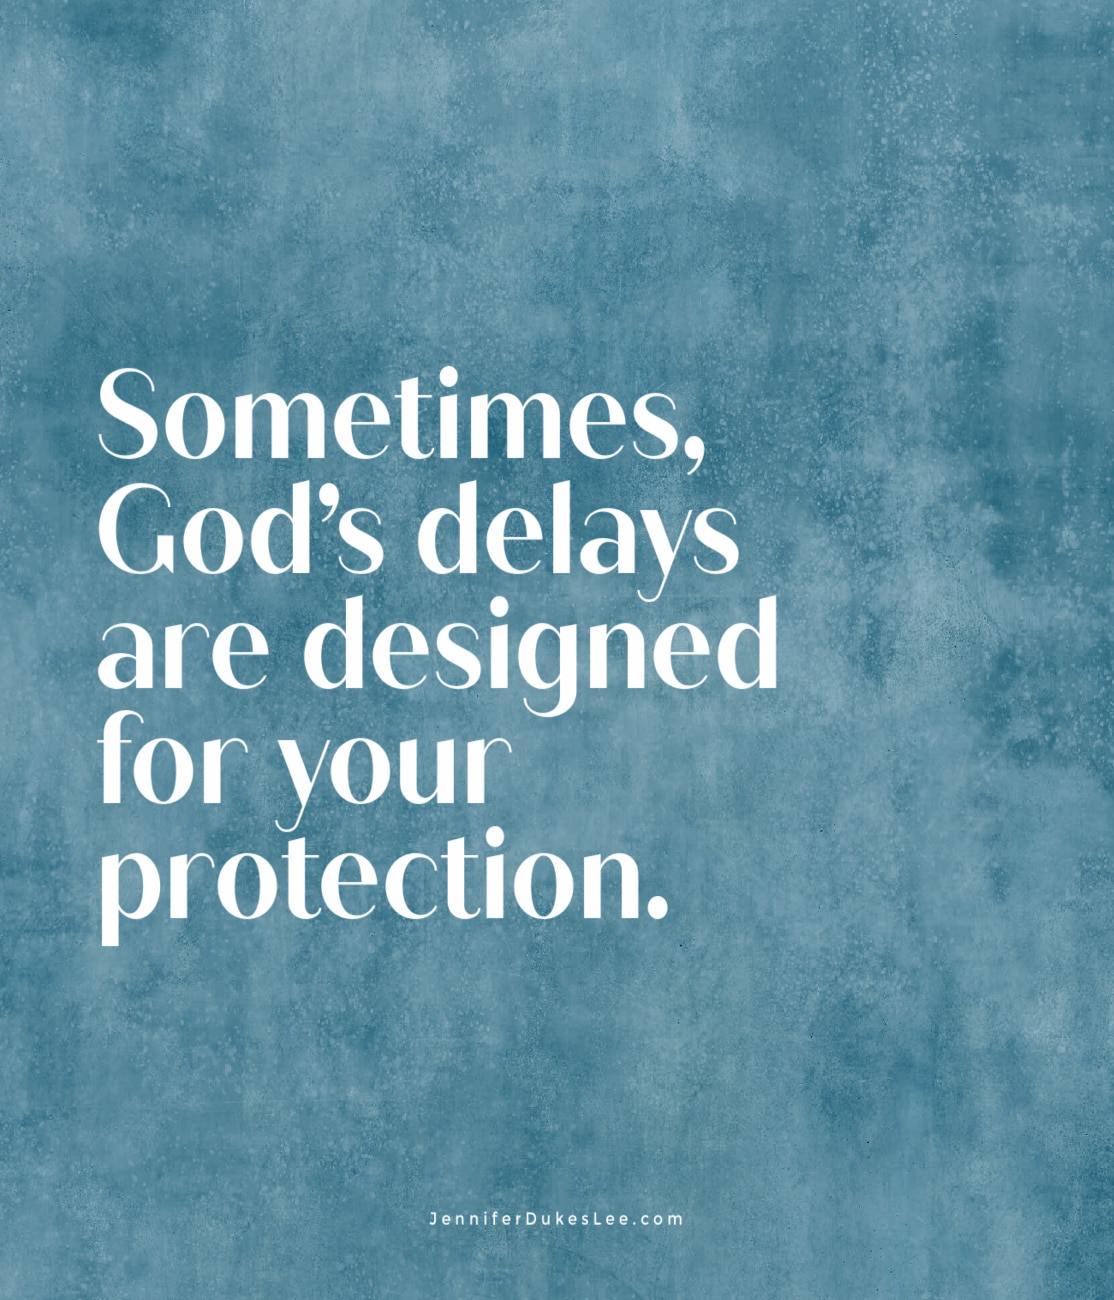 God’s delays